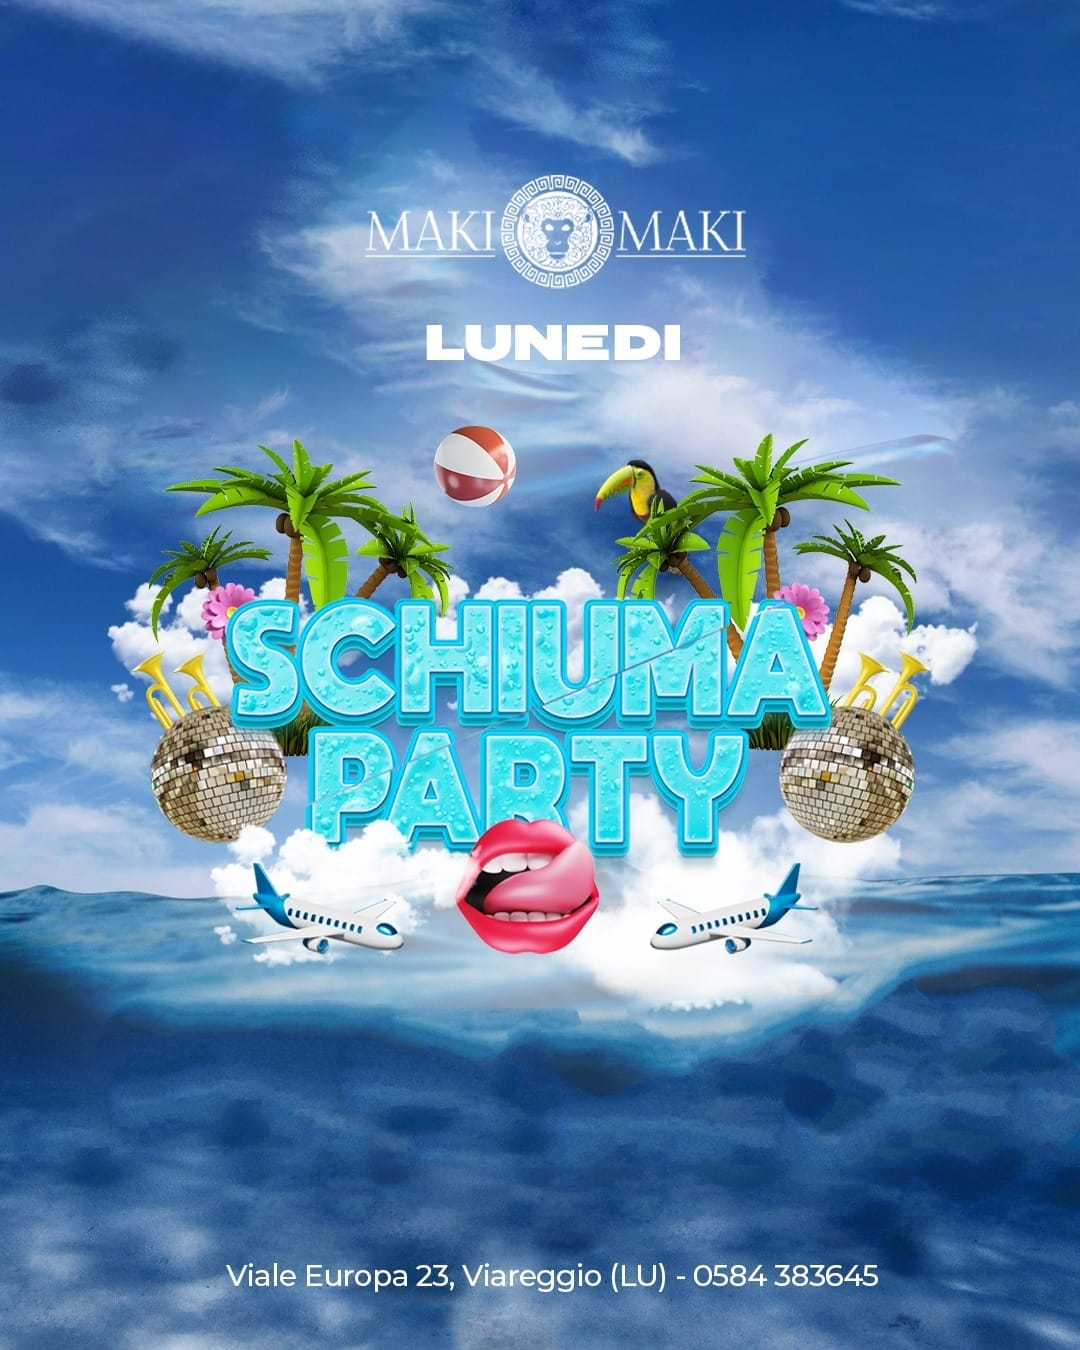 Schiuma Party @ Maki Maki